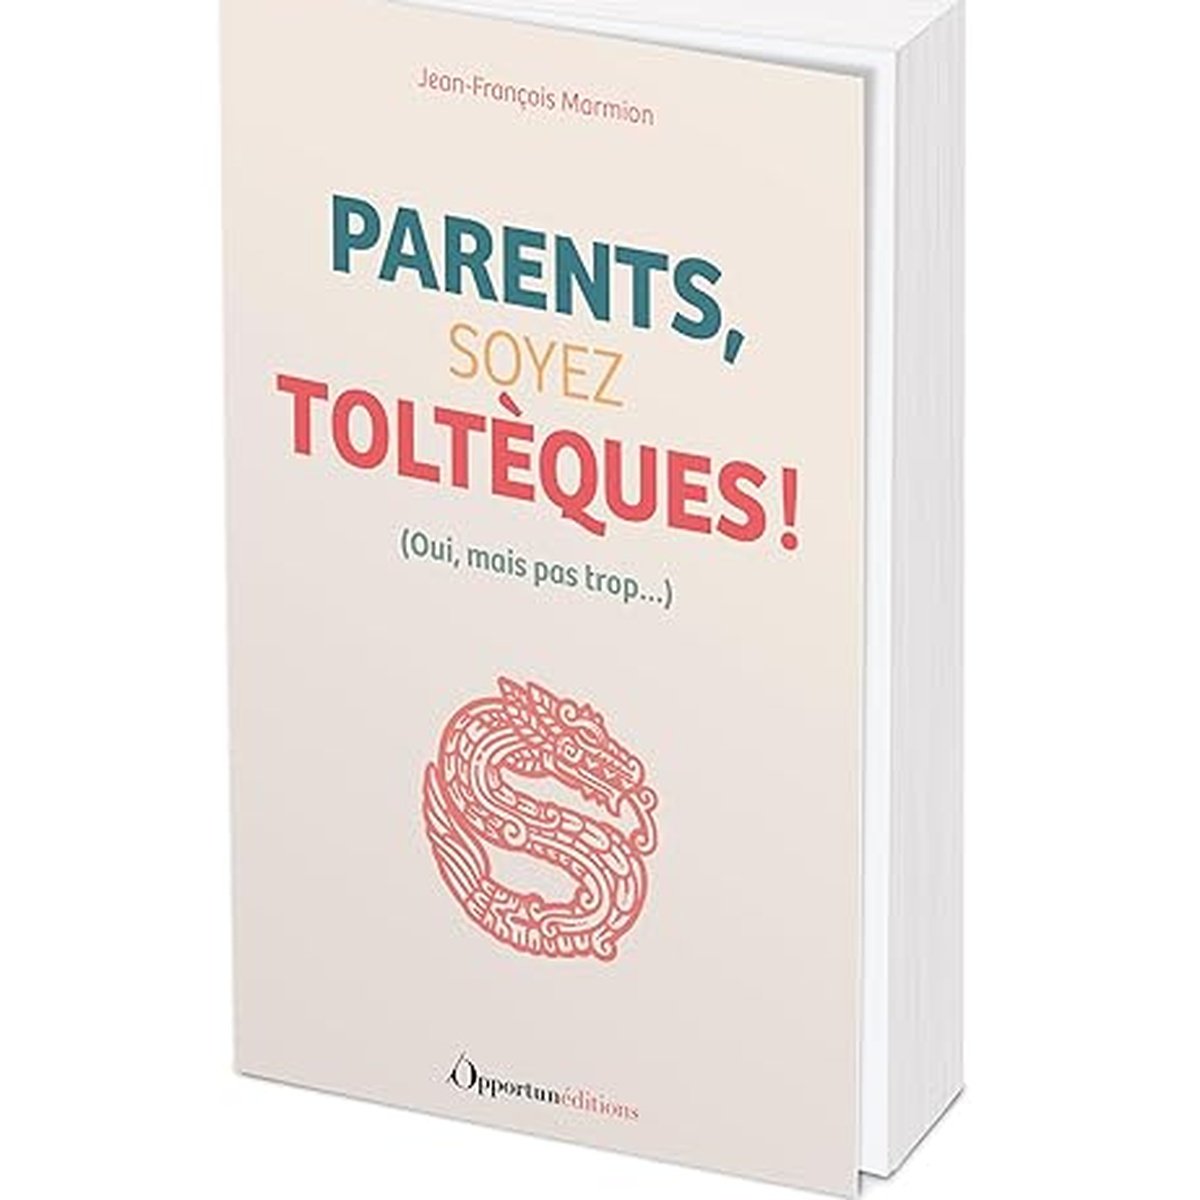 Parents, soyez Toltèques !: Oui, mais pas trop...